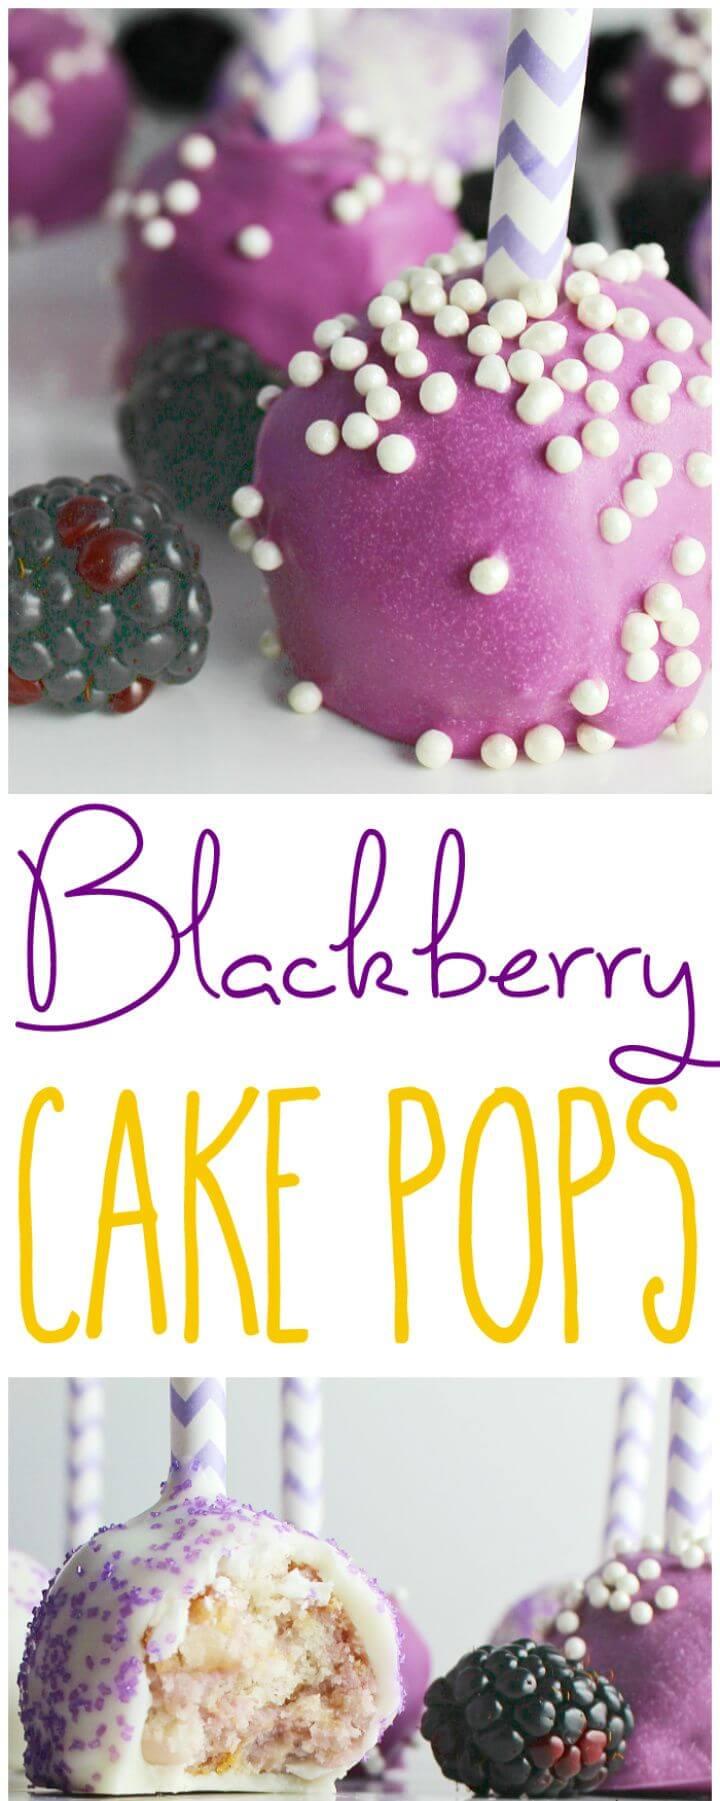 Easy DIY Blackberry Cake Pops